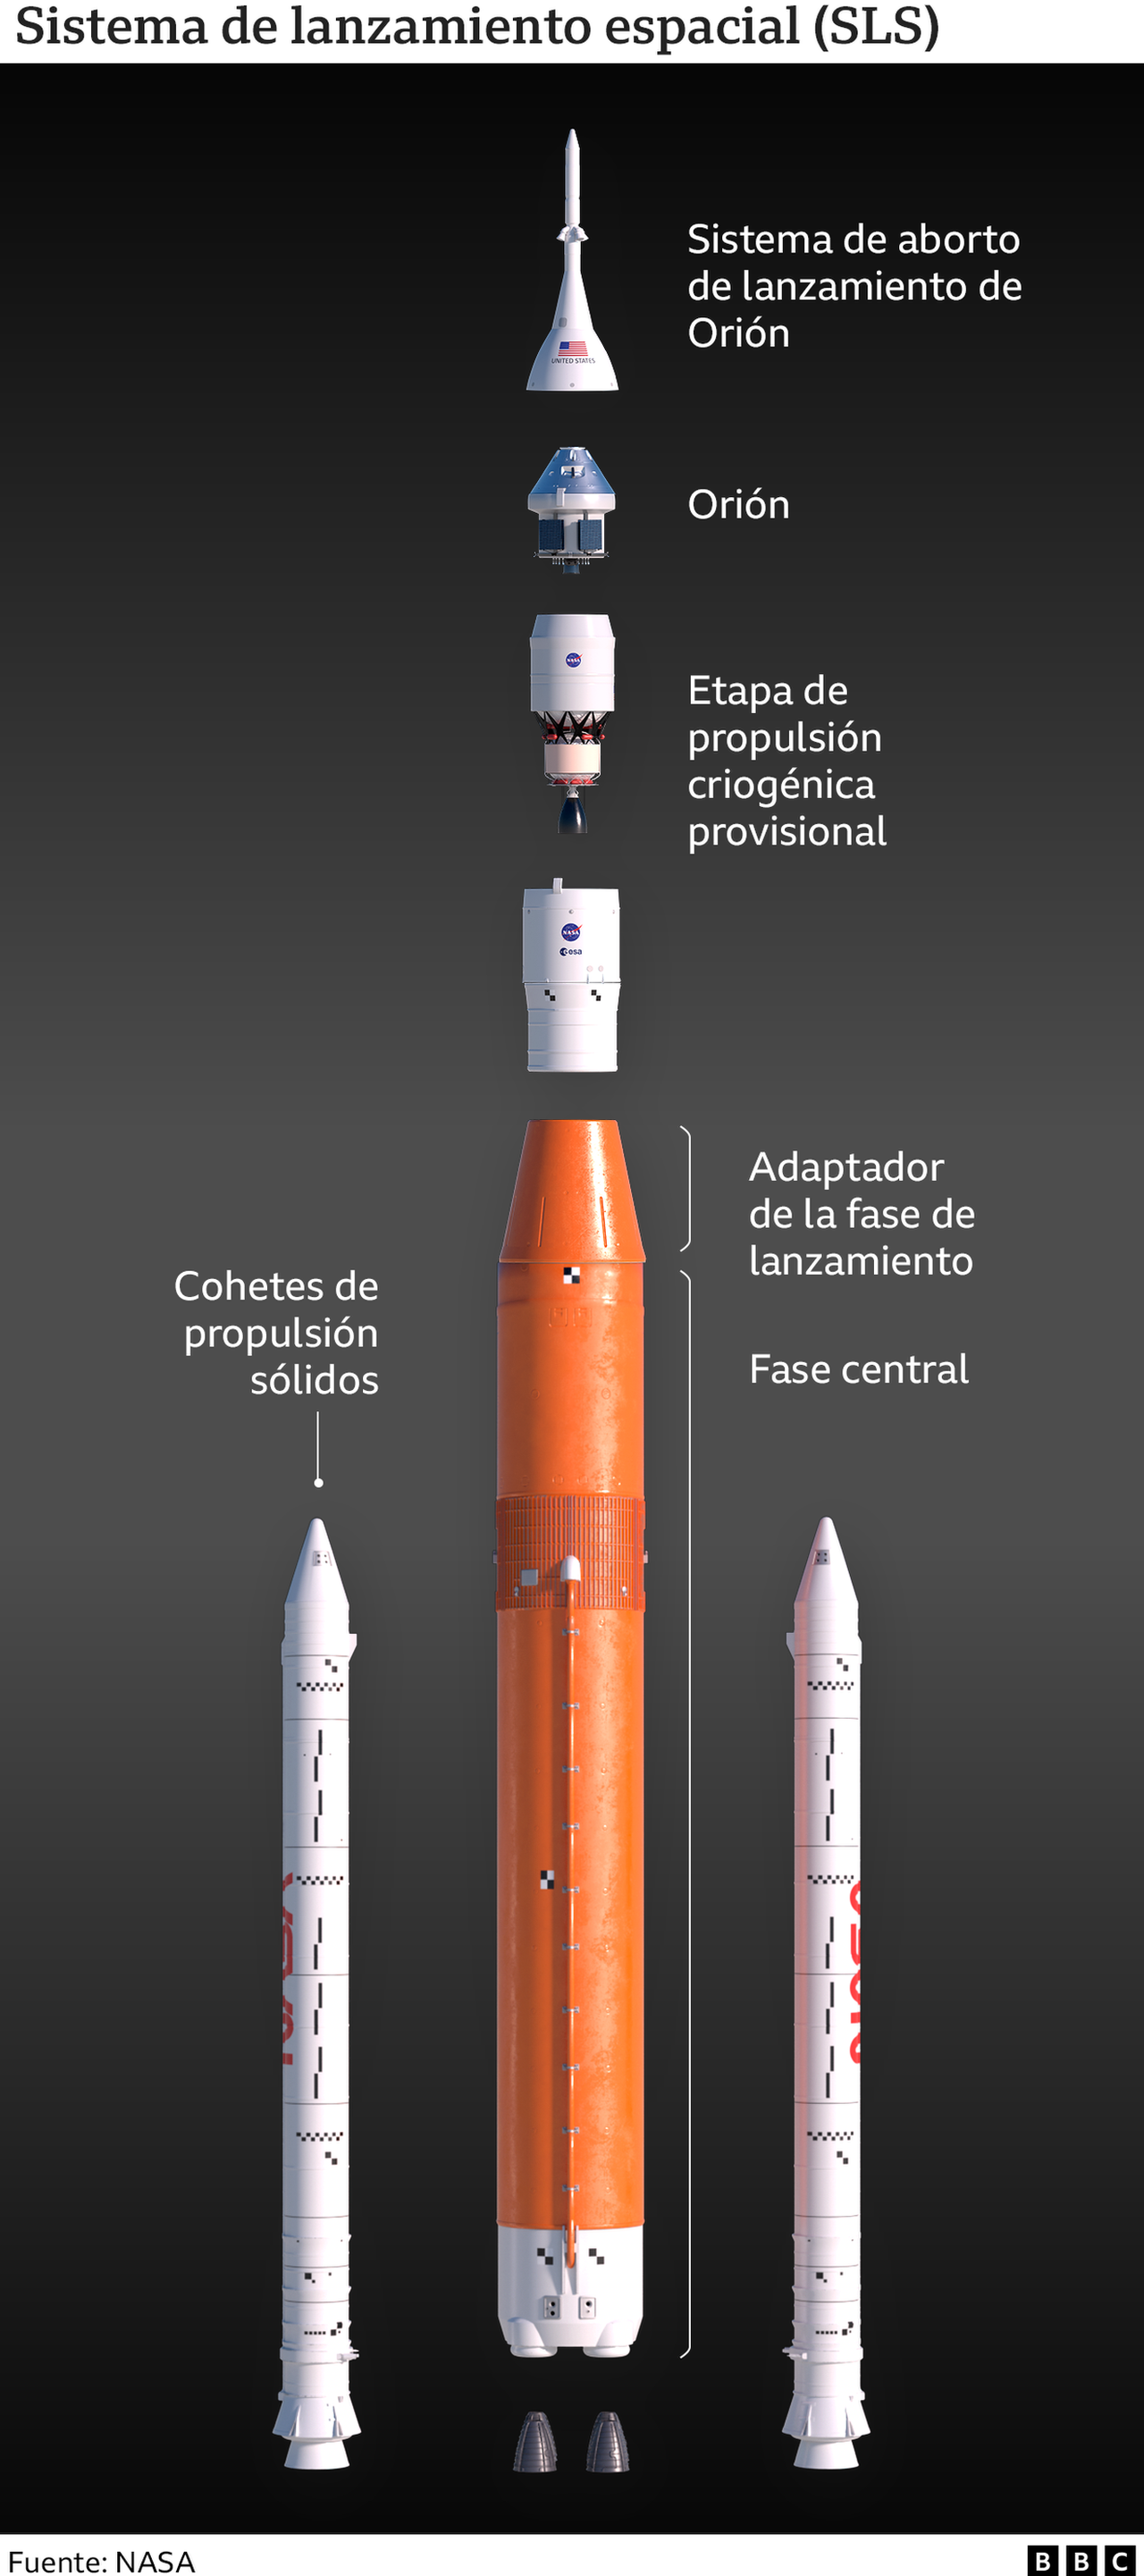 Sistema de lanzamiento espacial (SLS)